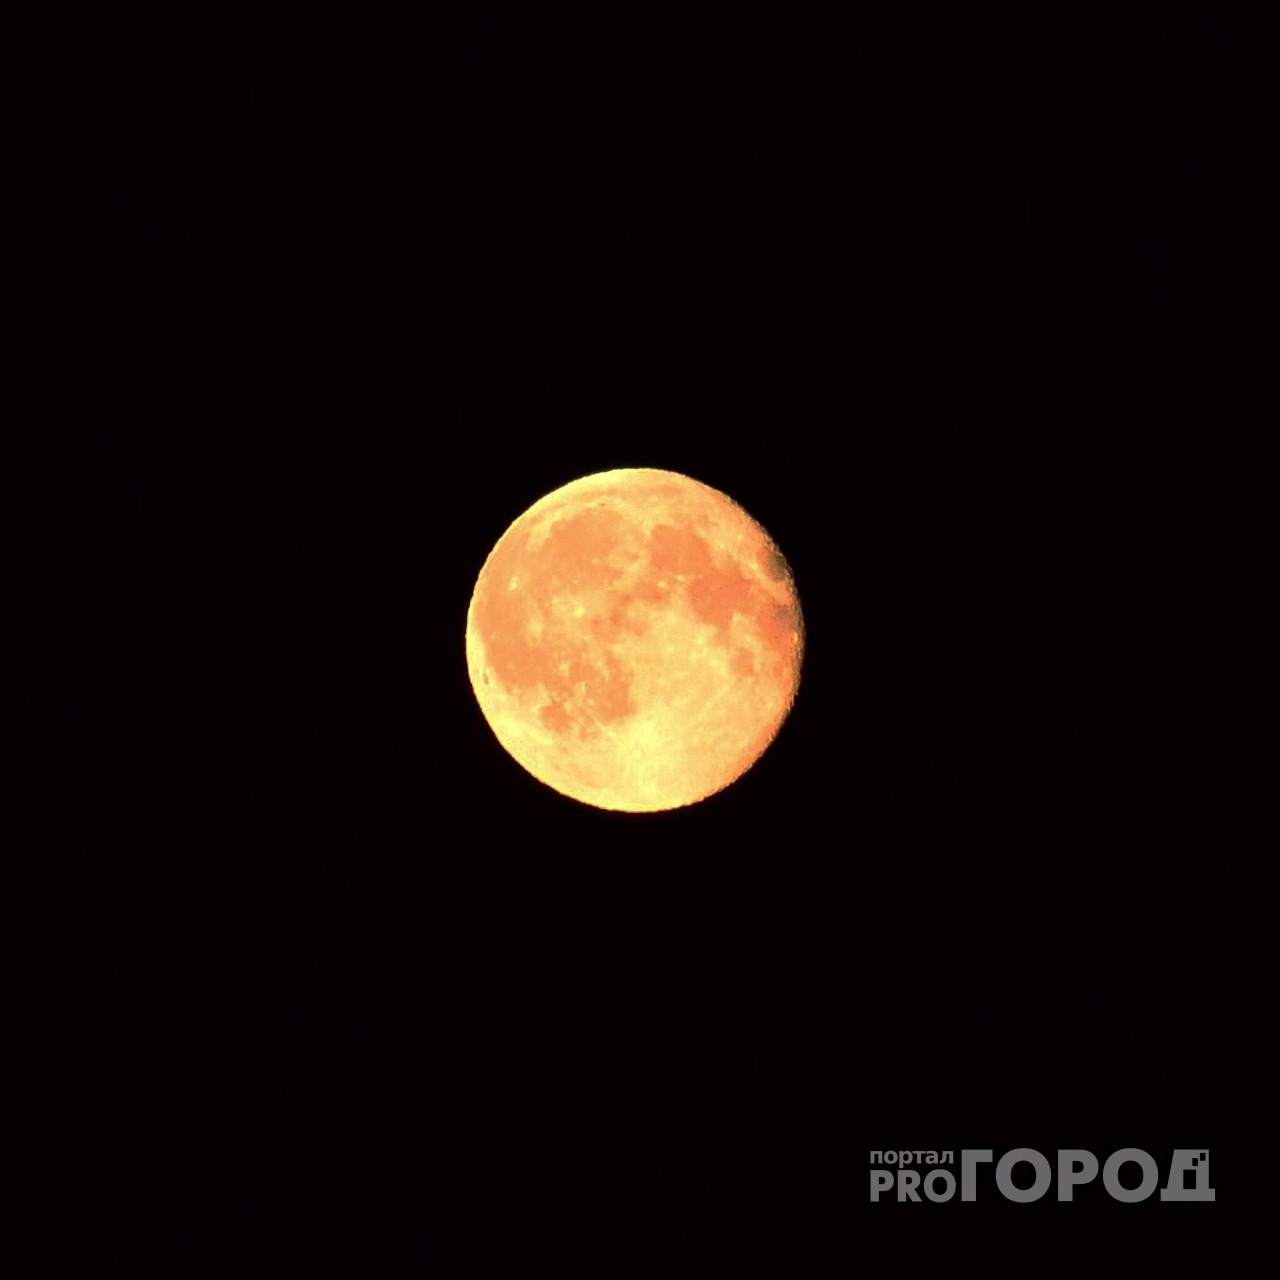 Астрономическое явление: в 2021 году жители России смогут наблюдать несколько затмений